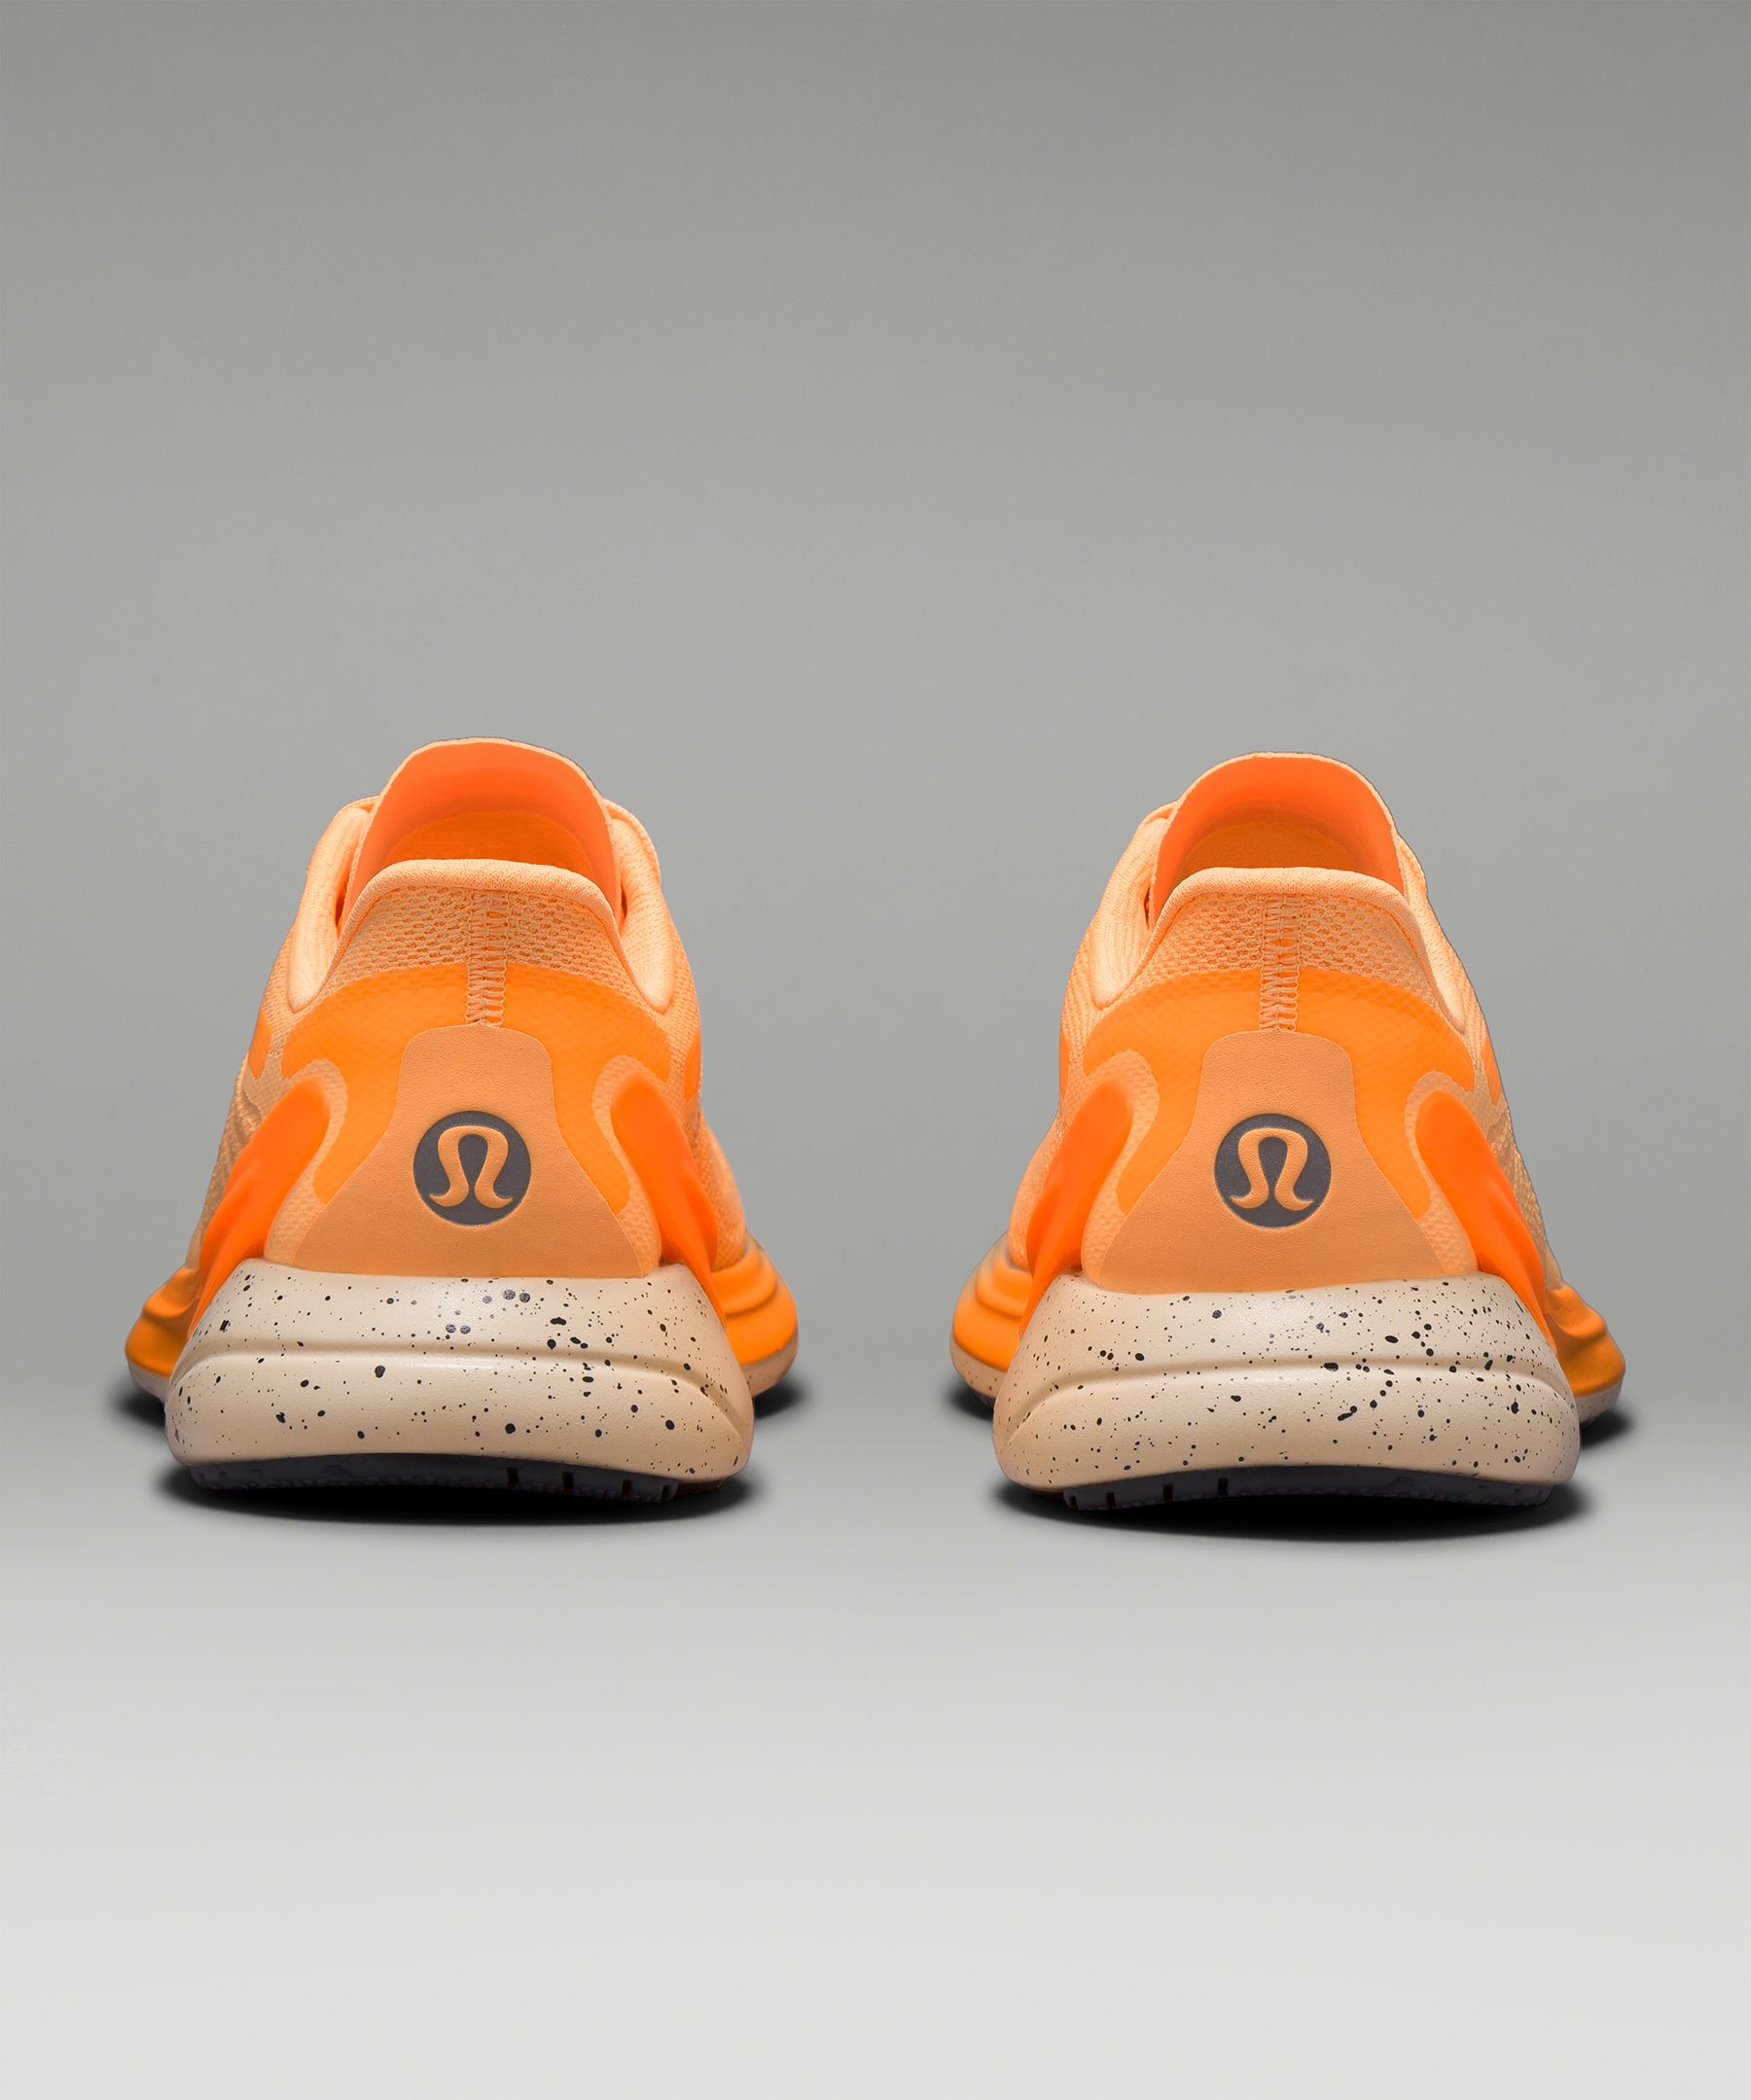 Lululemon Blissfeel Womens Running Shoe - Vapor / Highlight Orange